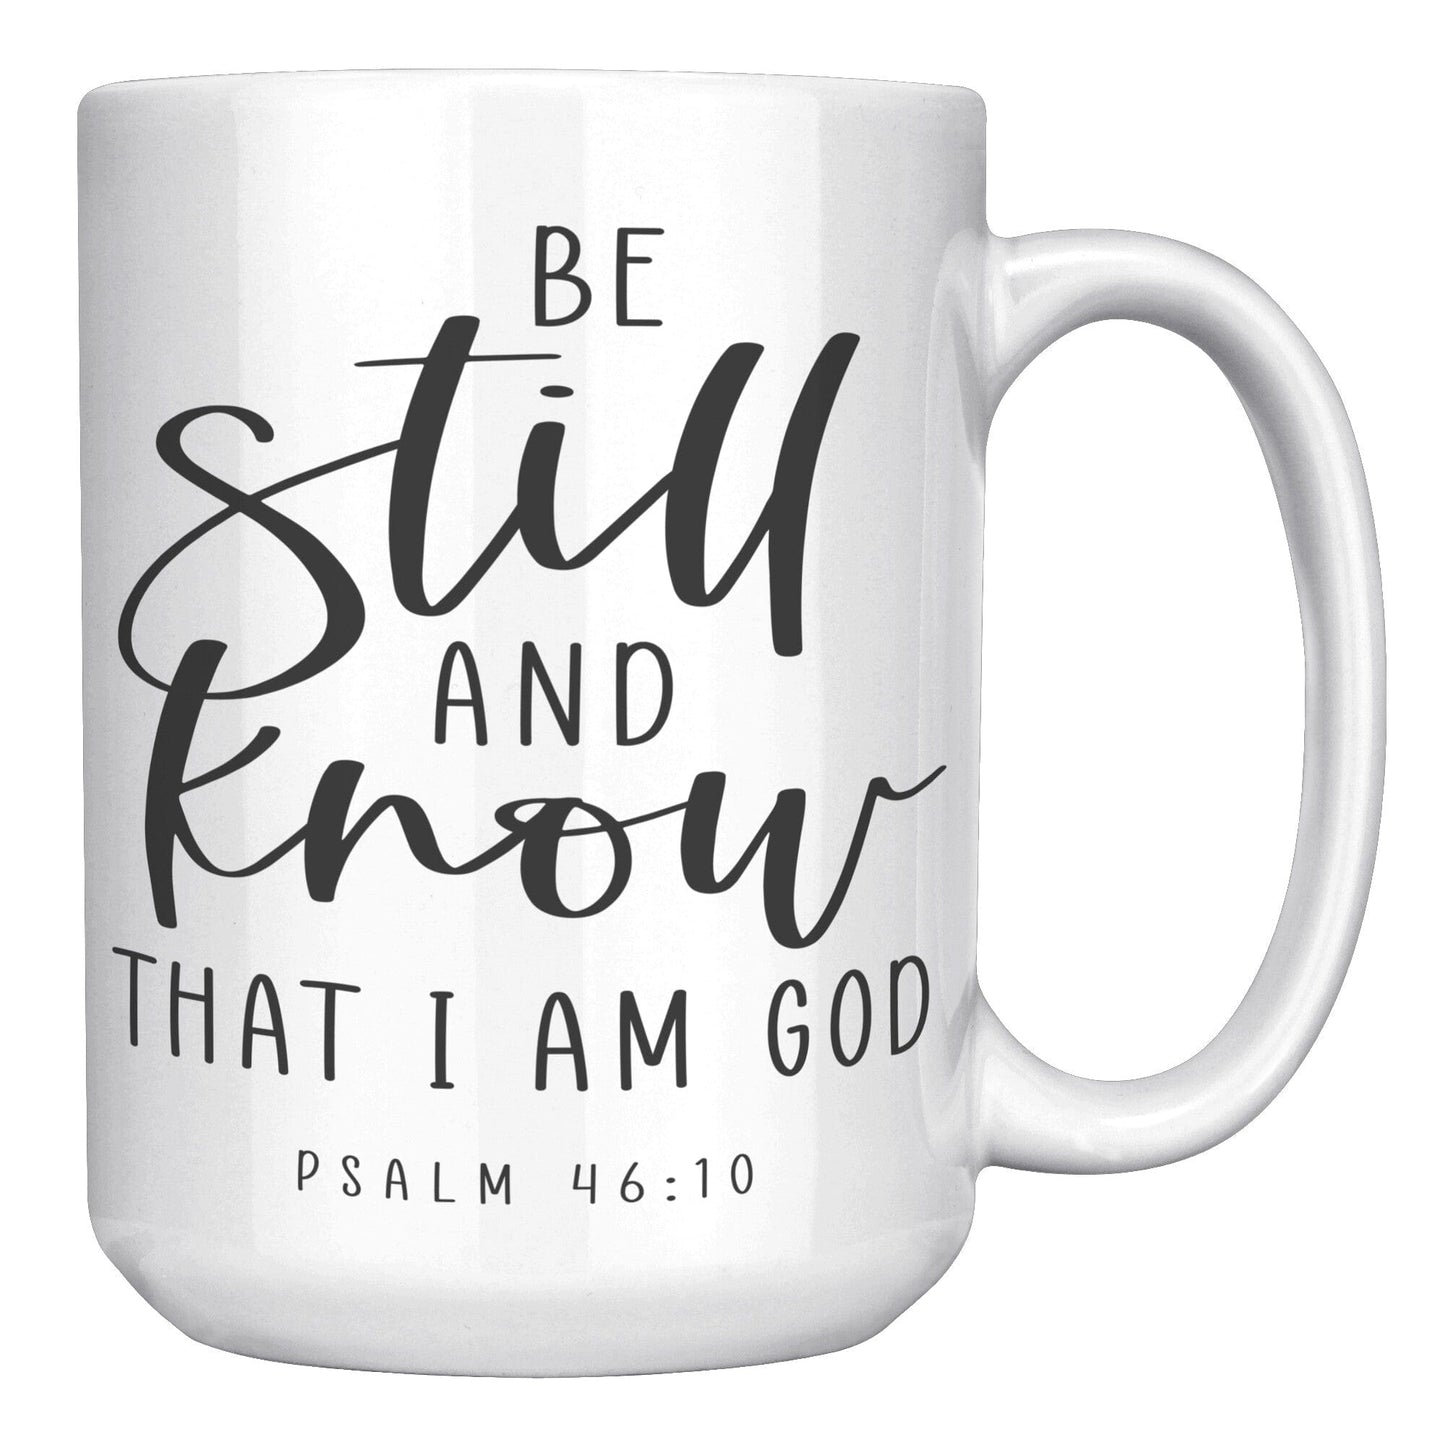 Psalm 46:10 Mug